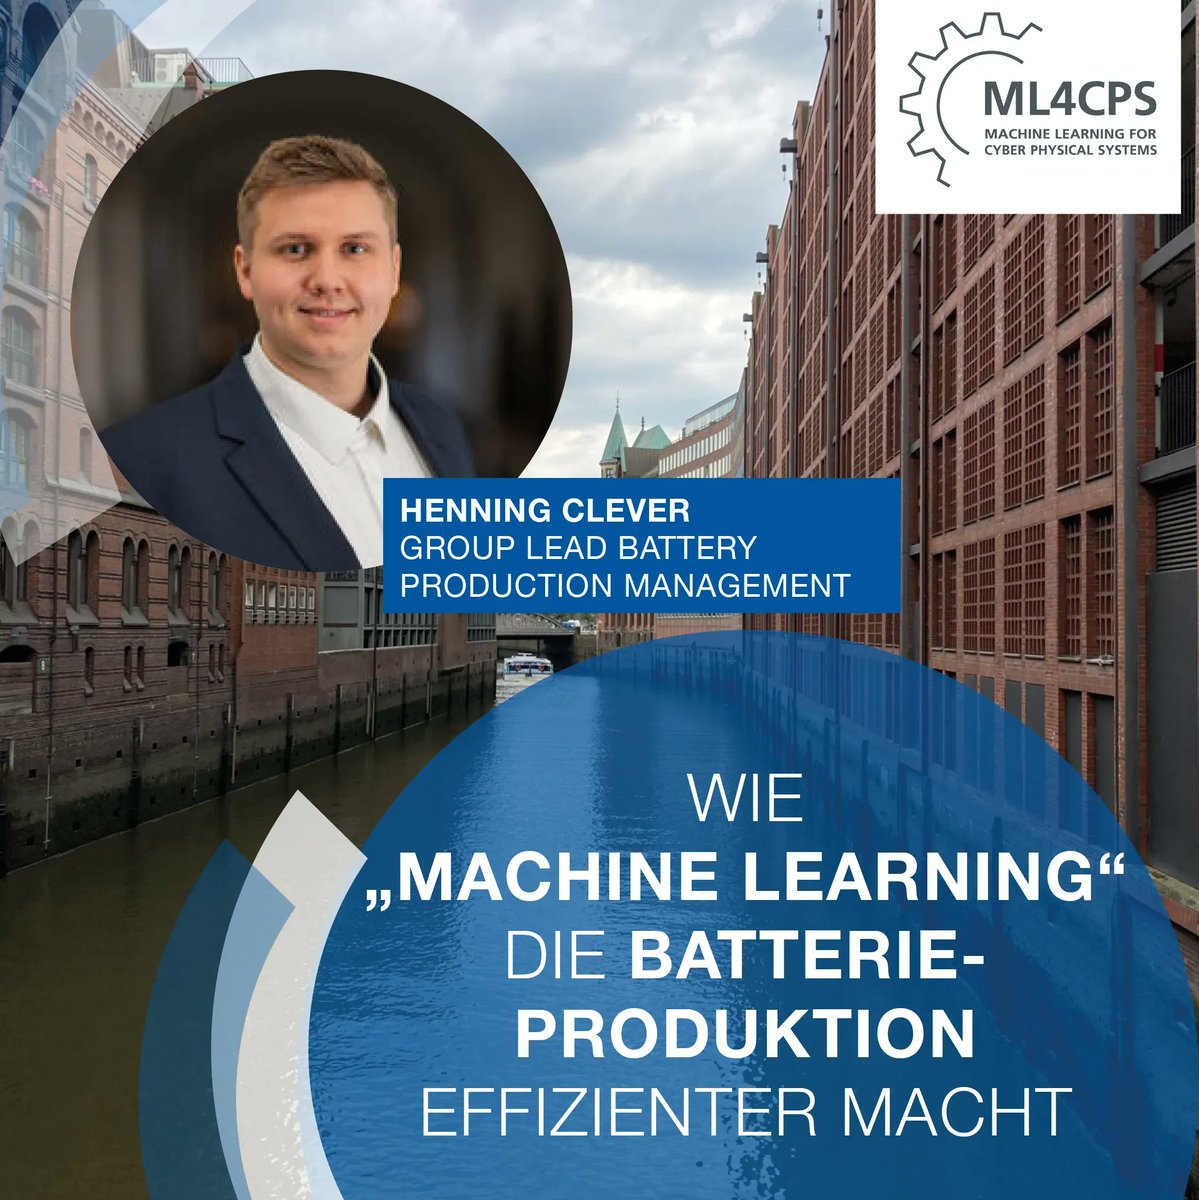 Wie verändert maschinelles Lernen die #Batterieproduktion? Am 30. März erklärt #PEM-Experte Henning Clever bei der Konferenz #ML4CPS, wie #MachineLearning dazu beitragen kann, die Effizienz und Qualität der #Batterie-Herstellung zu steigern. 🔋 Anmeldung: buff.ly/3JXrjqG